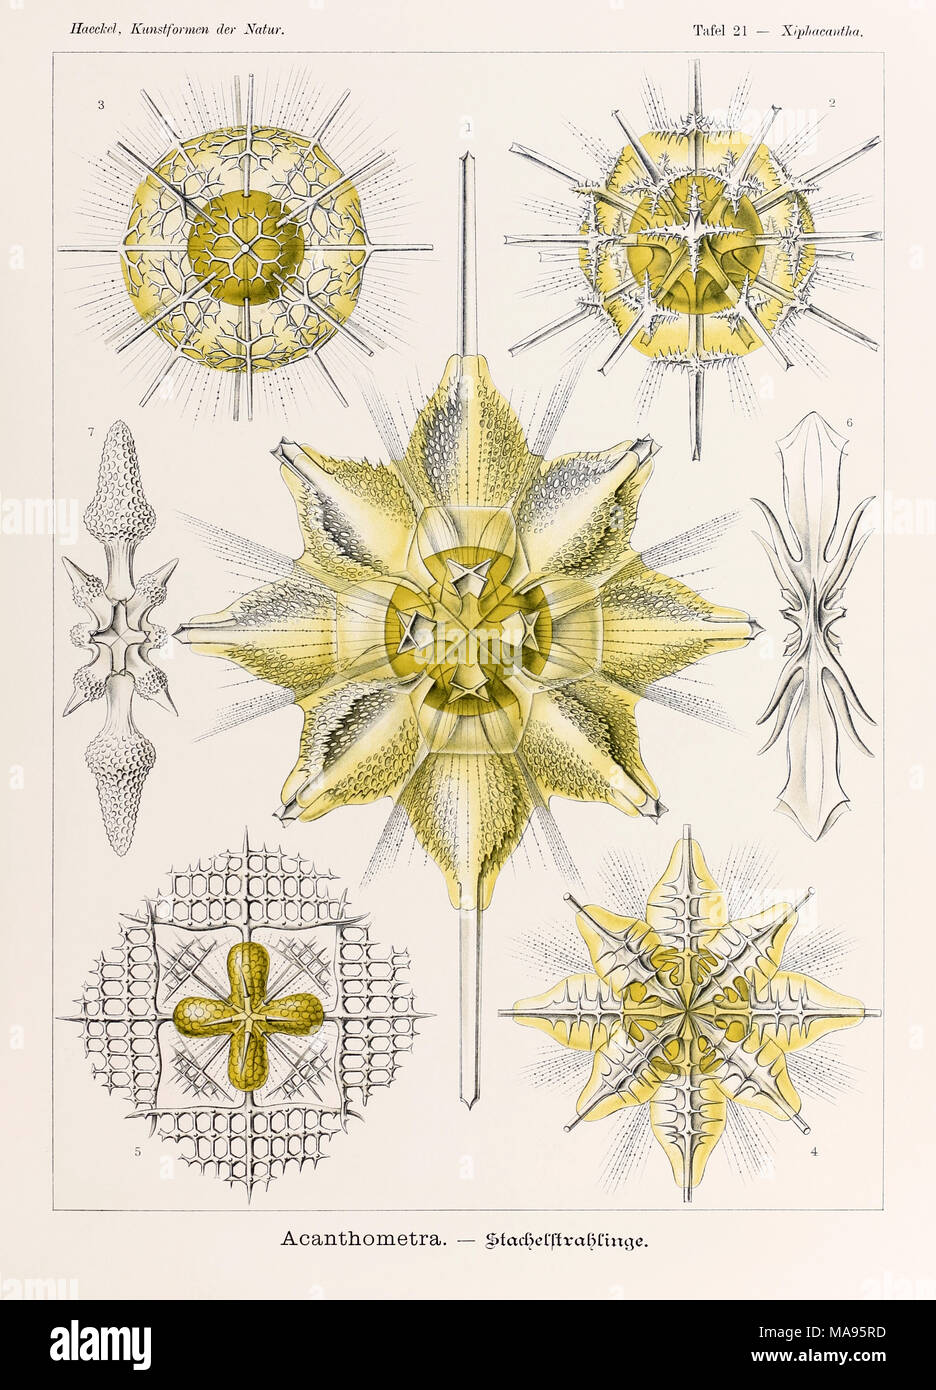 Planche 21 Xiphacantha Acantharea de 'Kunstformen der Natur' (formes d'art dans la Nature) illustrée par Ernst Haeckel (1834-1919). Voir plus d'informations ci-dessous. Banque D'Images